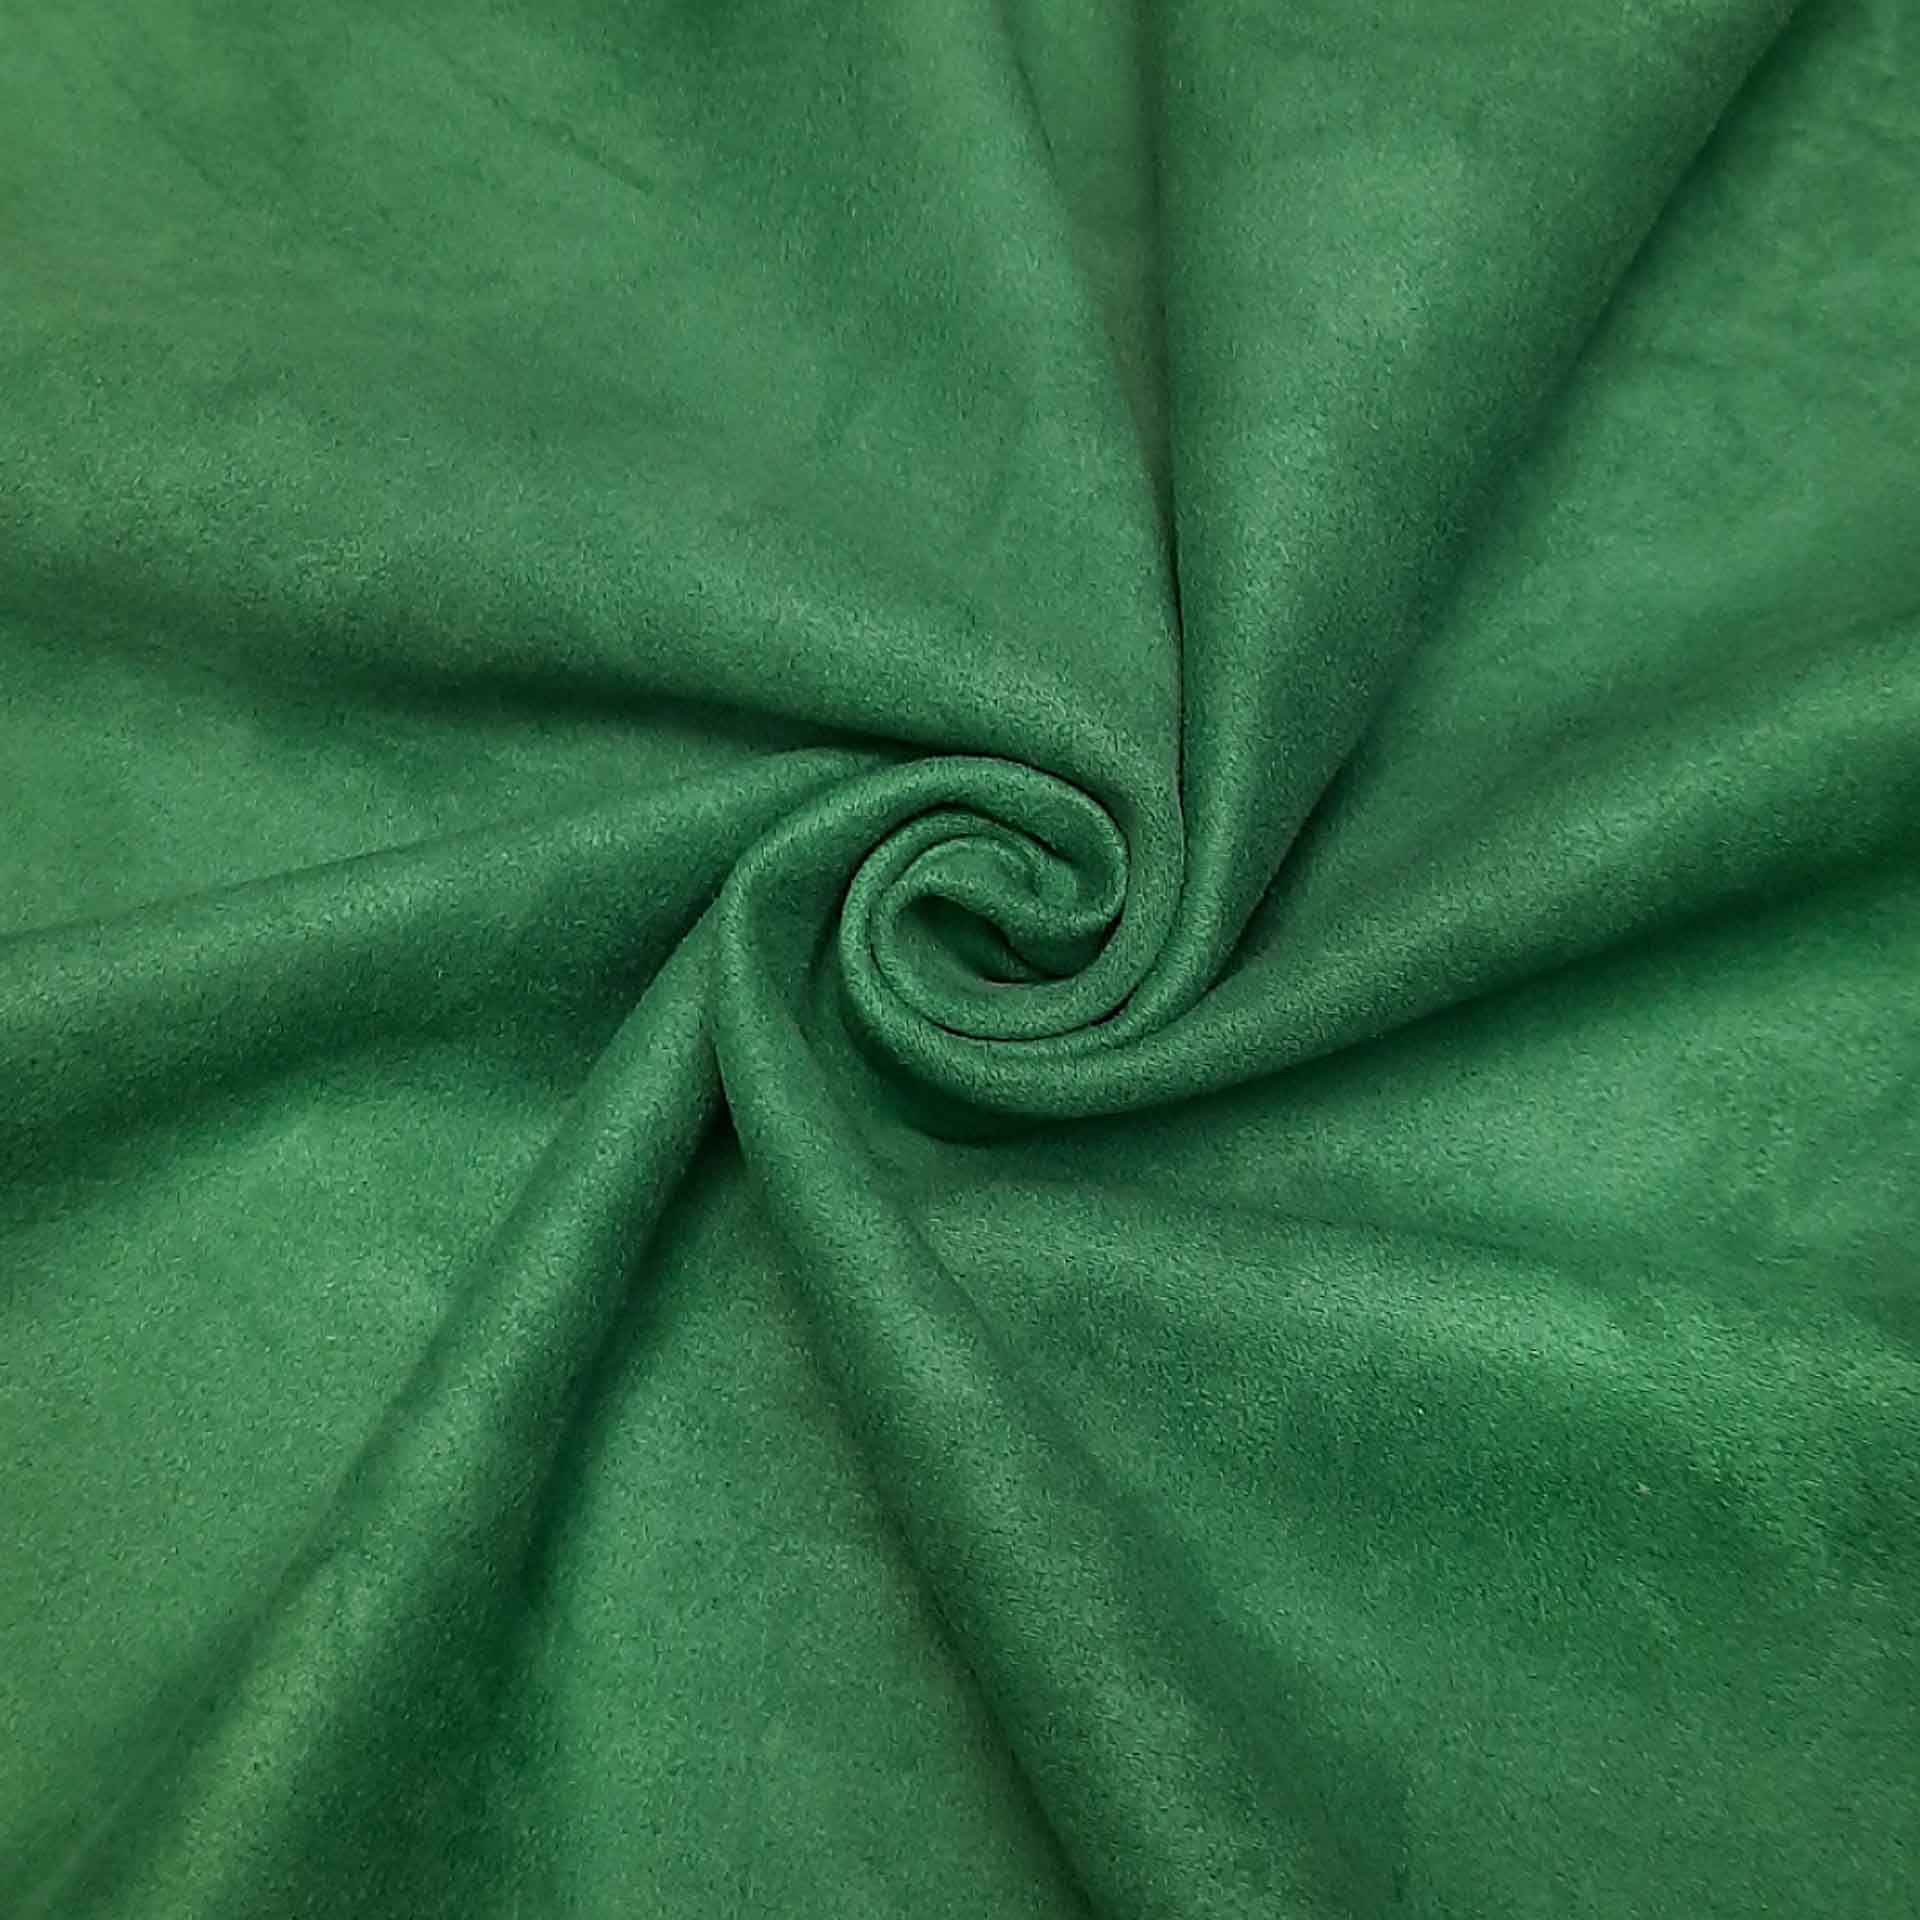 پارچه ی سوییت به رنگ سبز